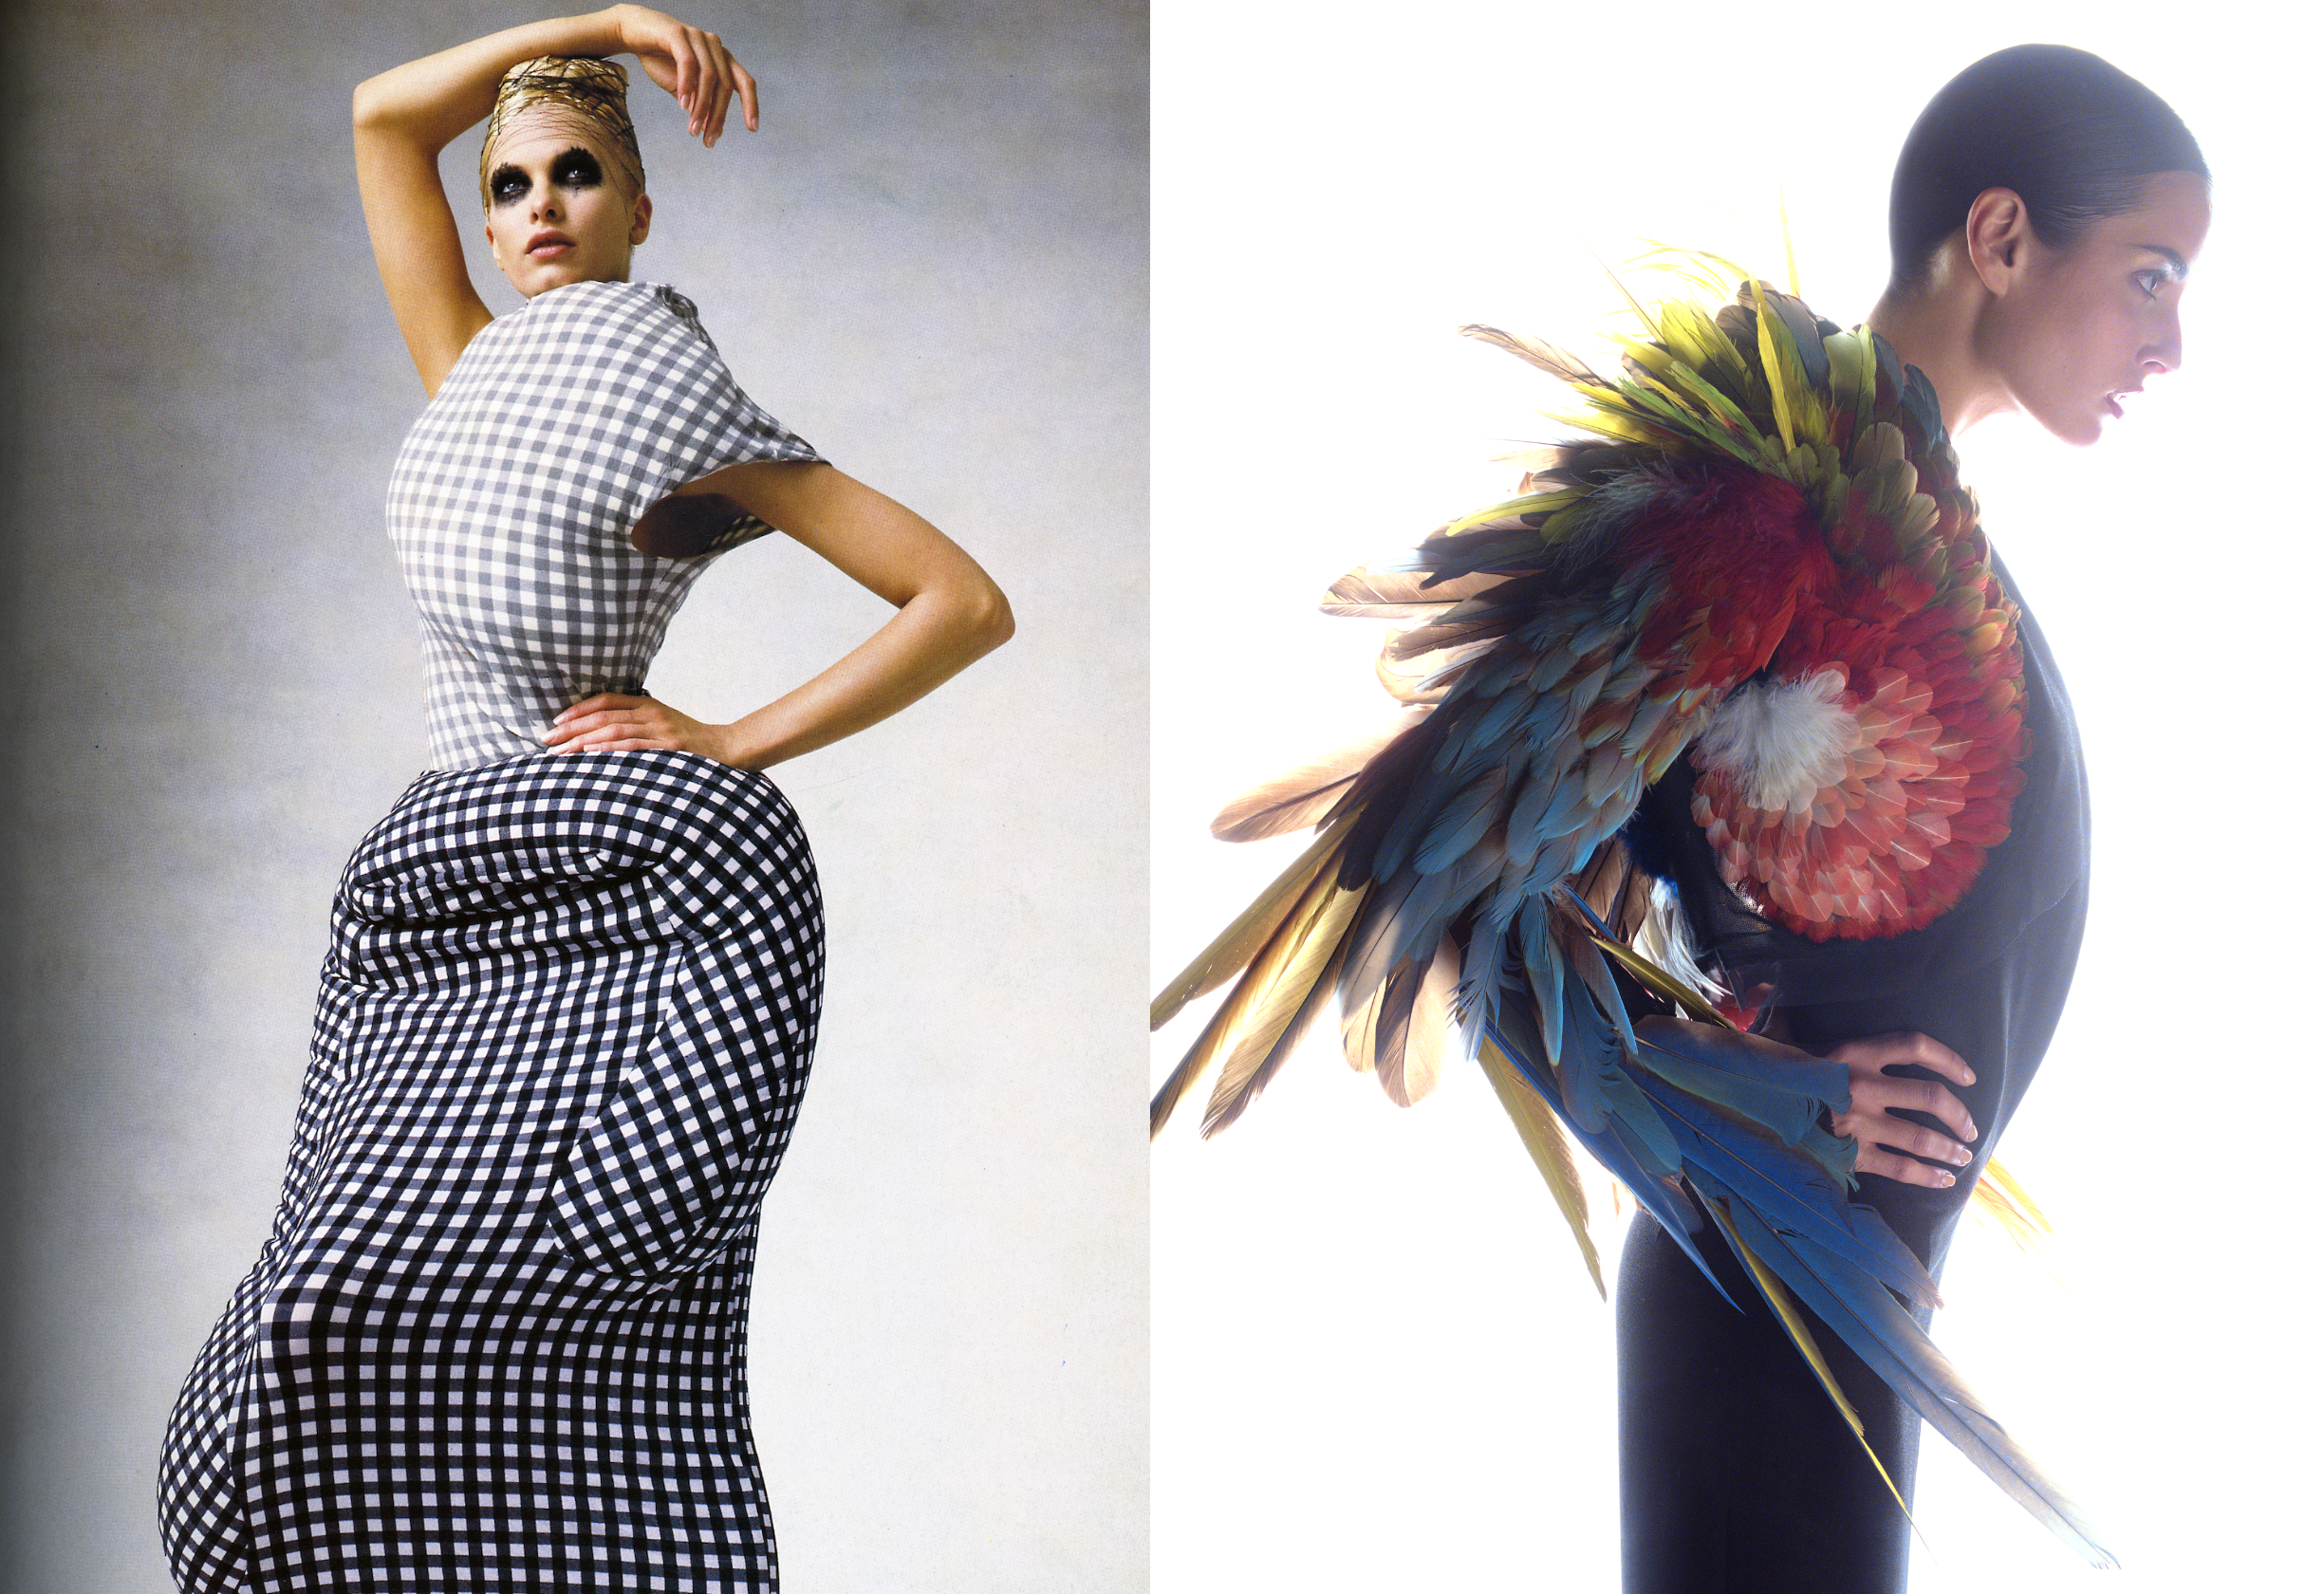 Nicolas Ghsequiere & Balenciaga  Episode 3: In Vogue, The 2000s